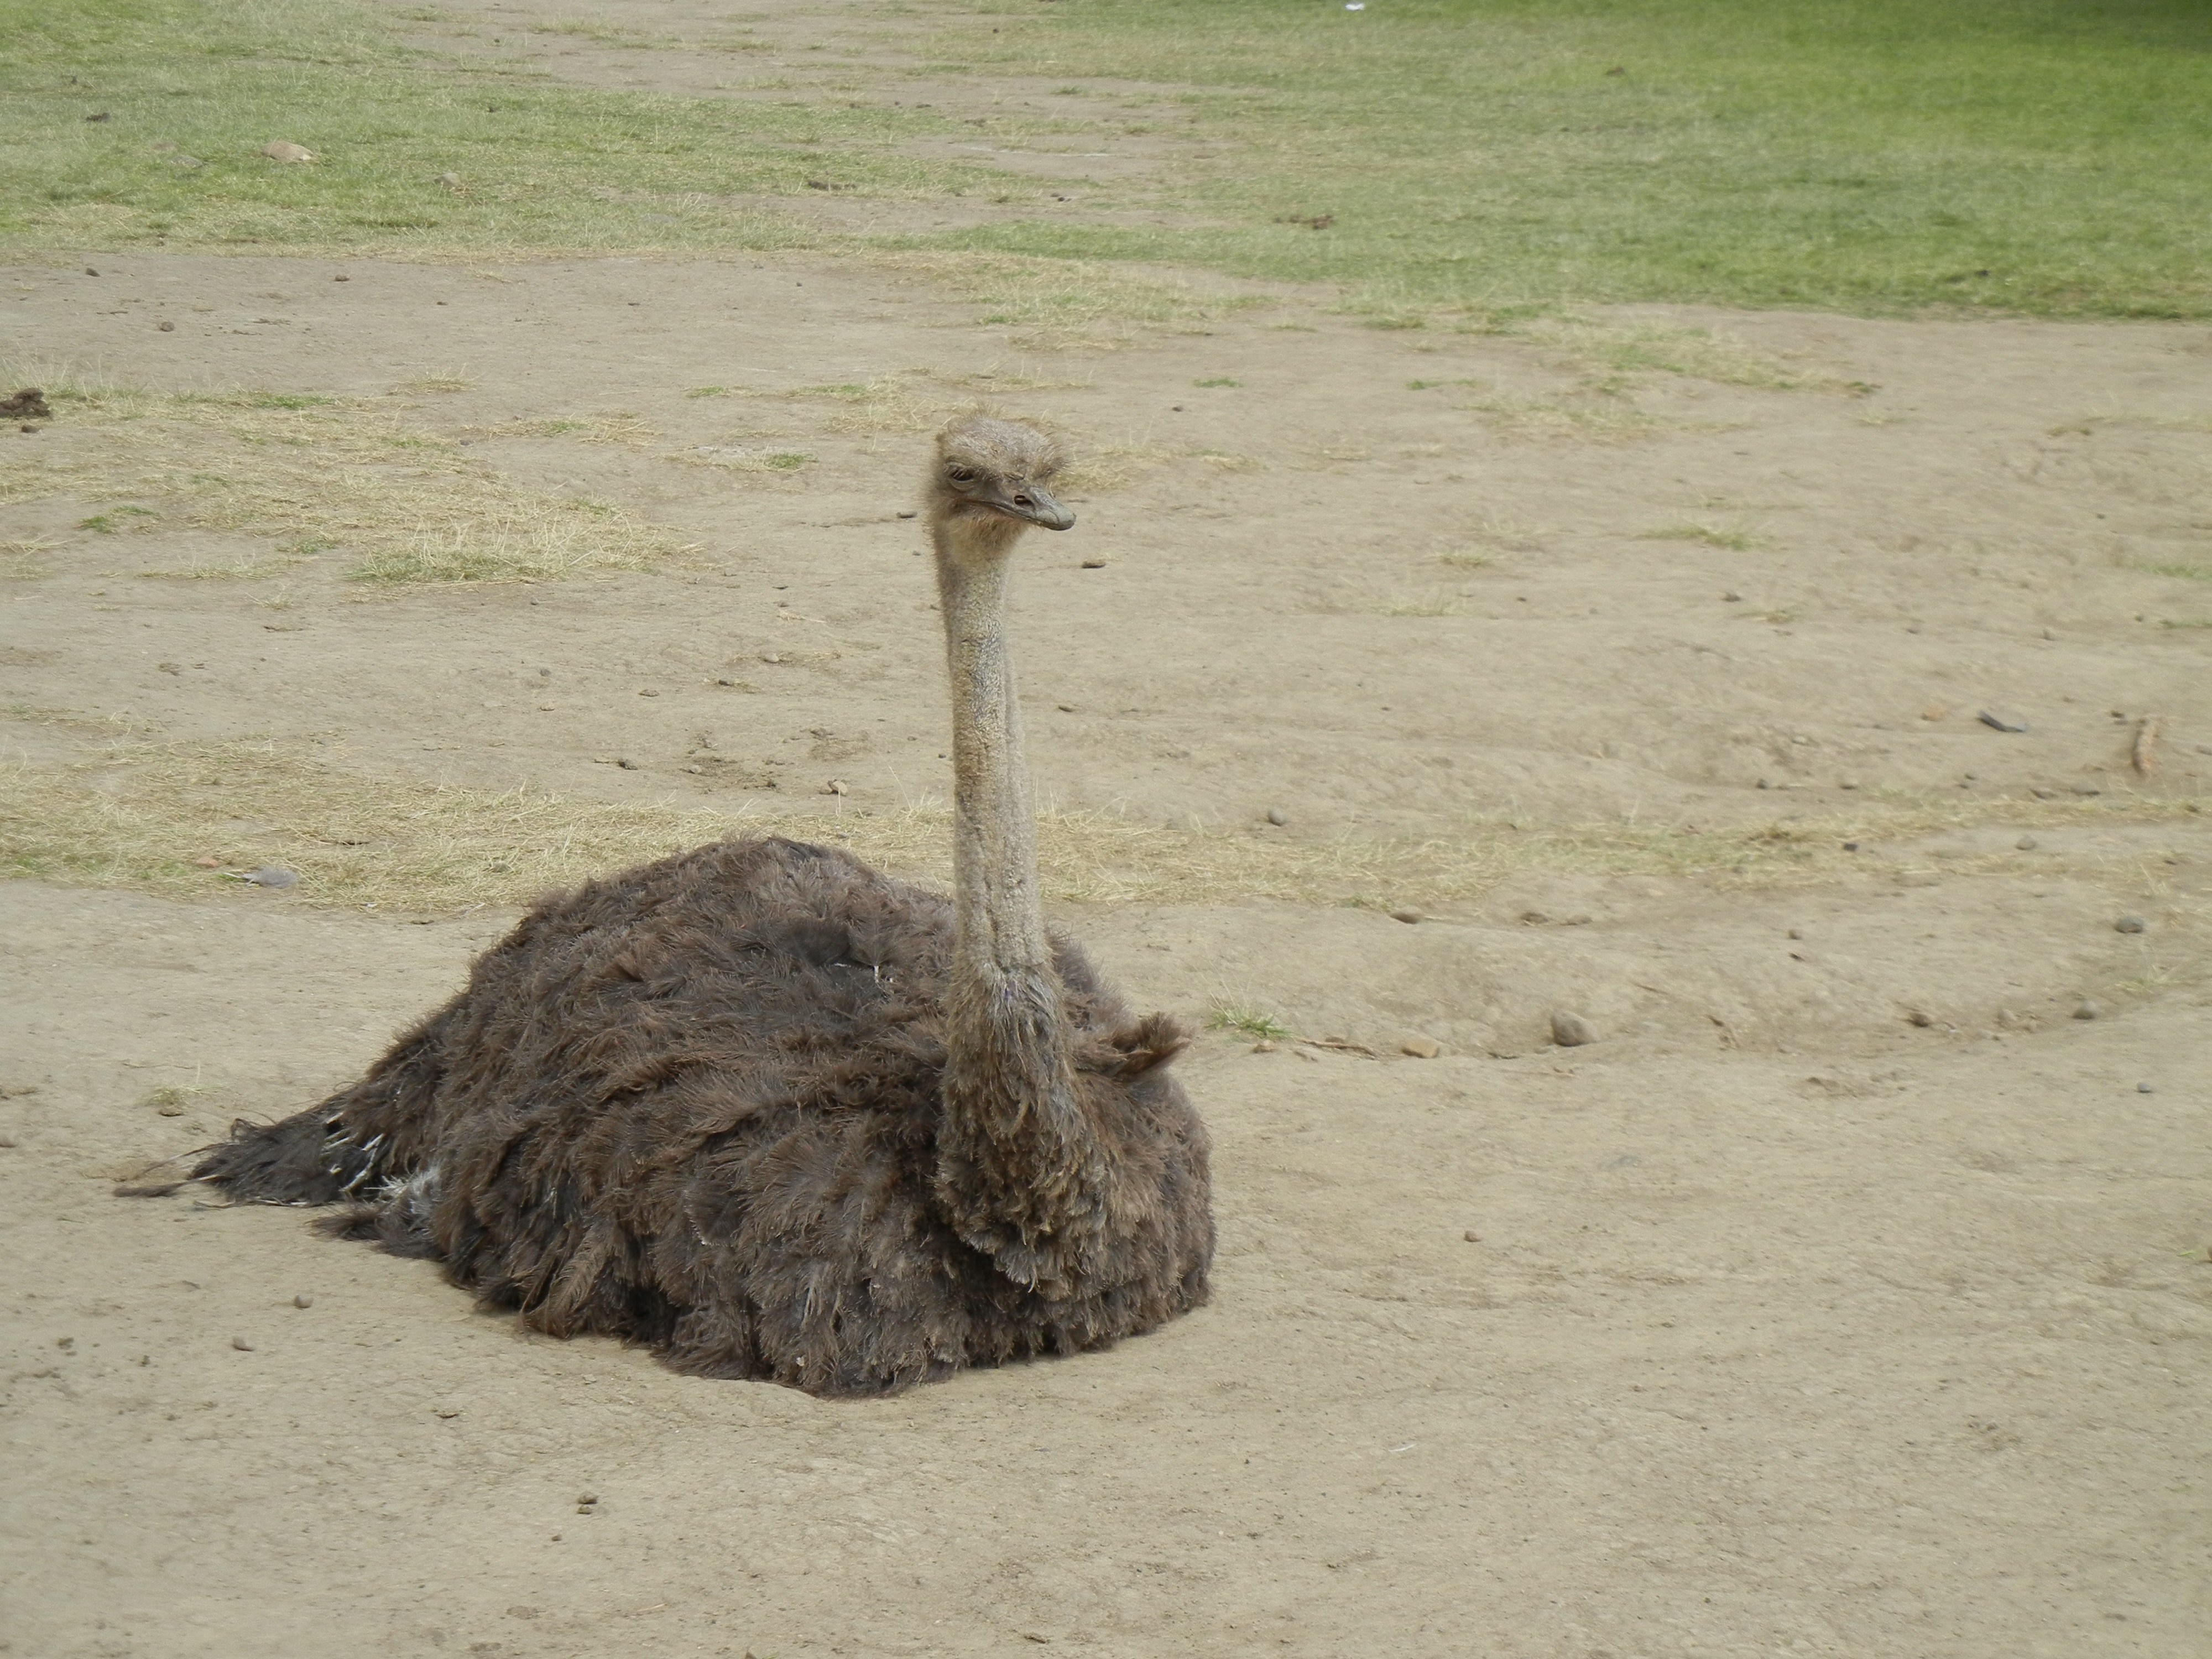 How an Ostrich sits